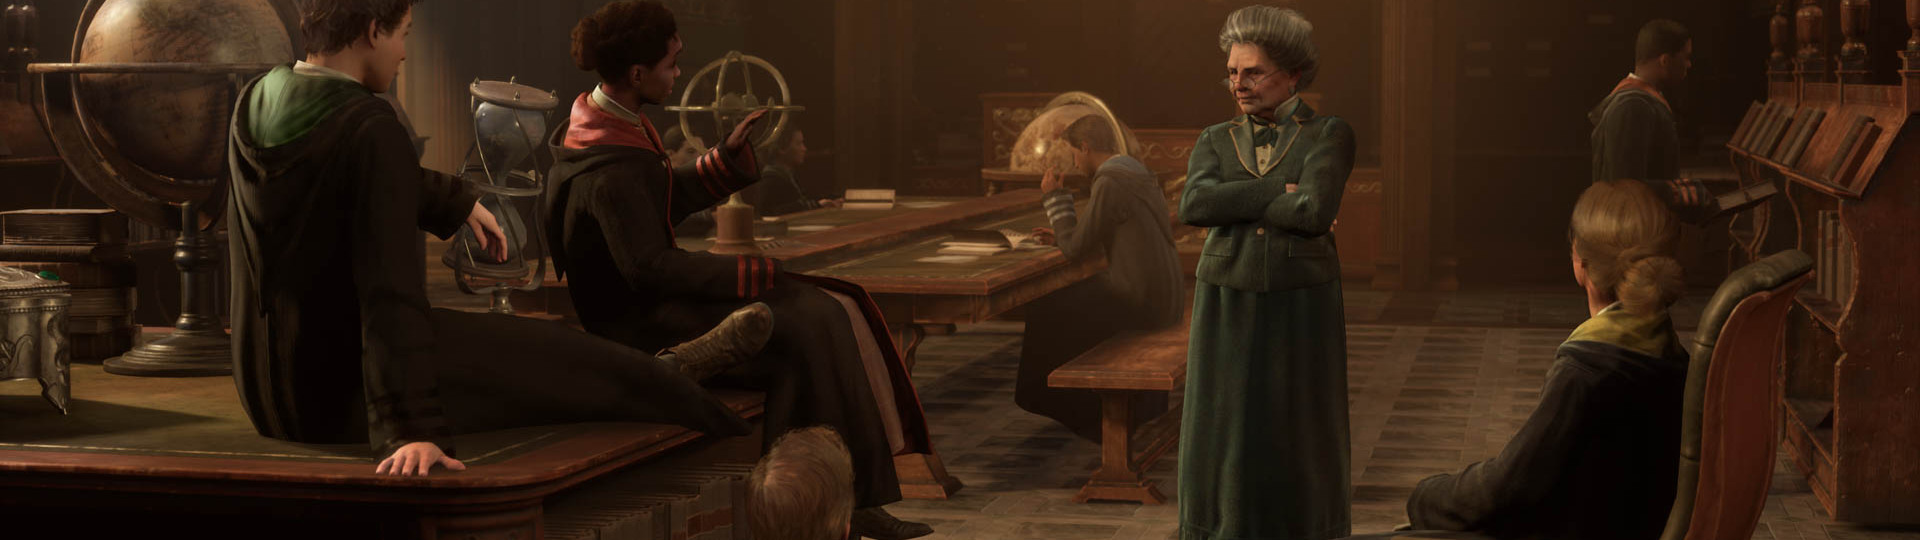 PS4 verze Hogwarts Legacy odložena | Novinky